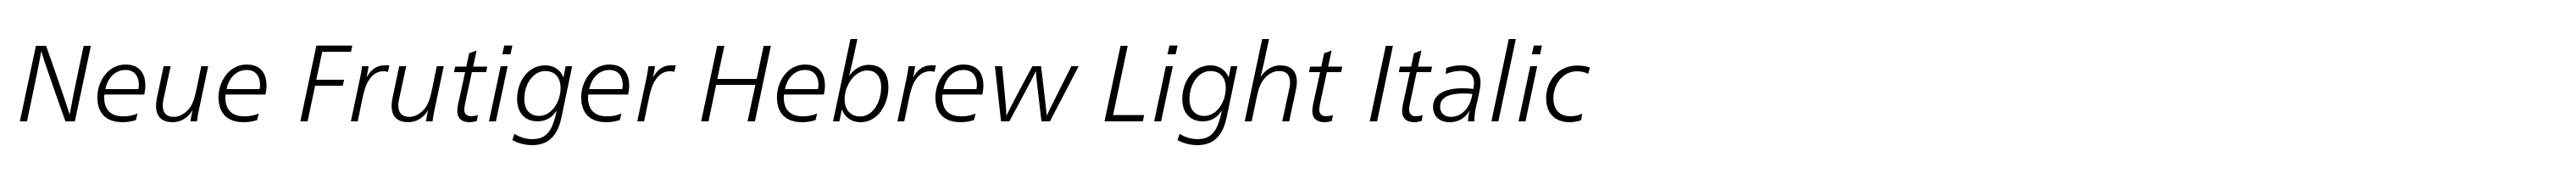 Neue Frutiger Hebrew Light Italic